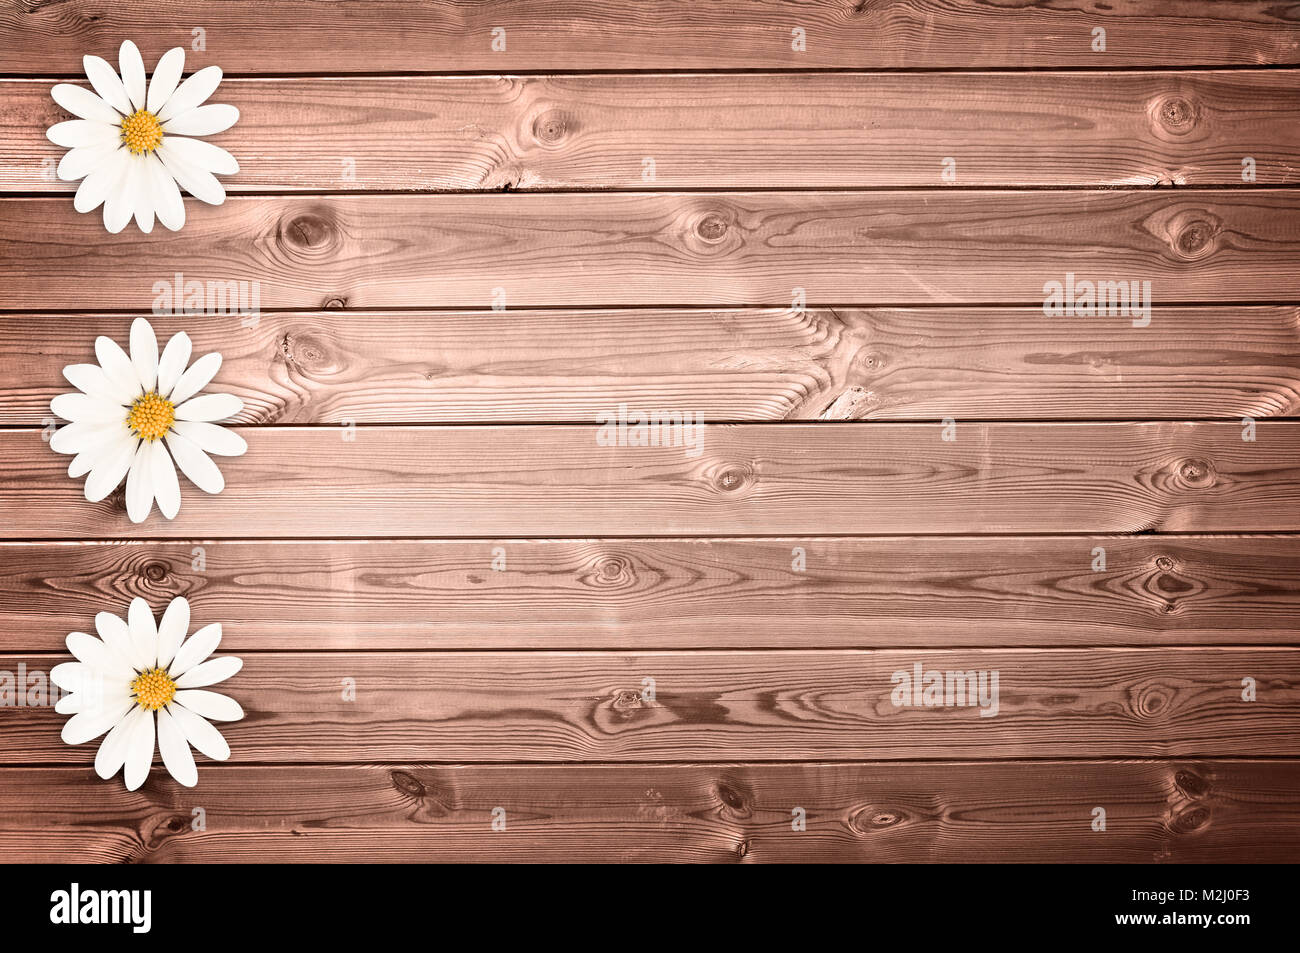 Holzplanken Hintergrund mit Gänseblümchen Stockfoto